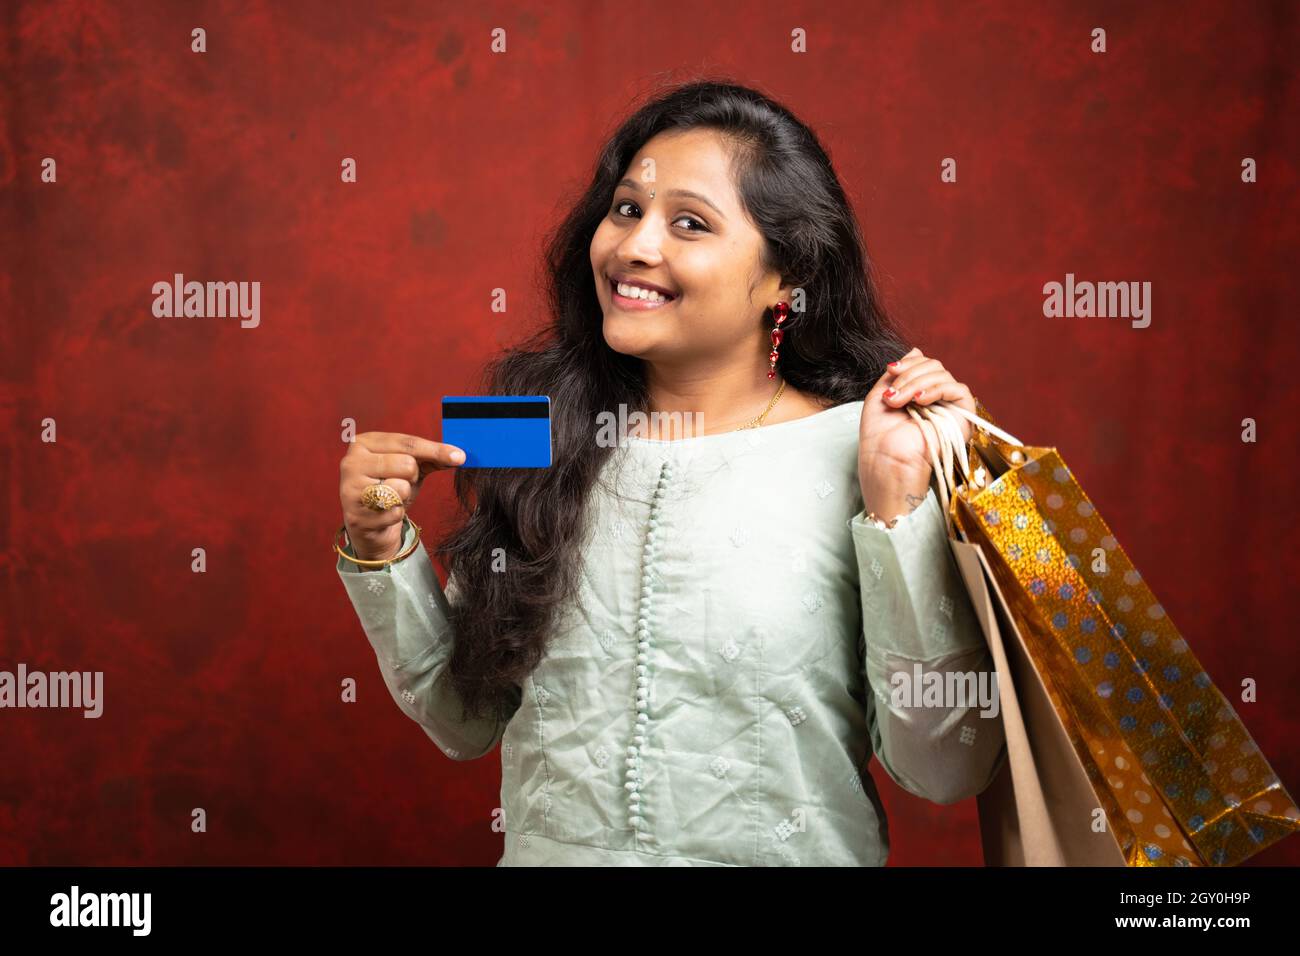 Bonne fille indienne souriante avec sac de shopping et carte de crédit - concept de ventes de festival de vacances Banque D'Images